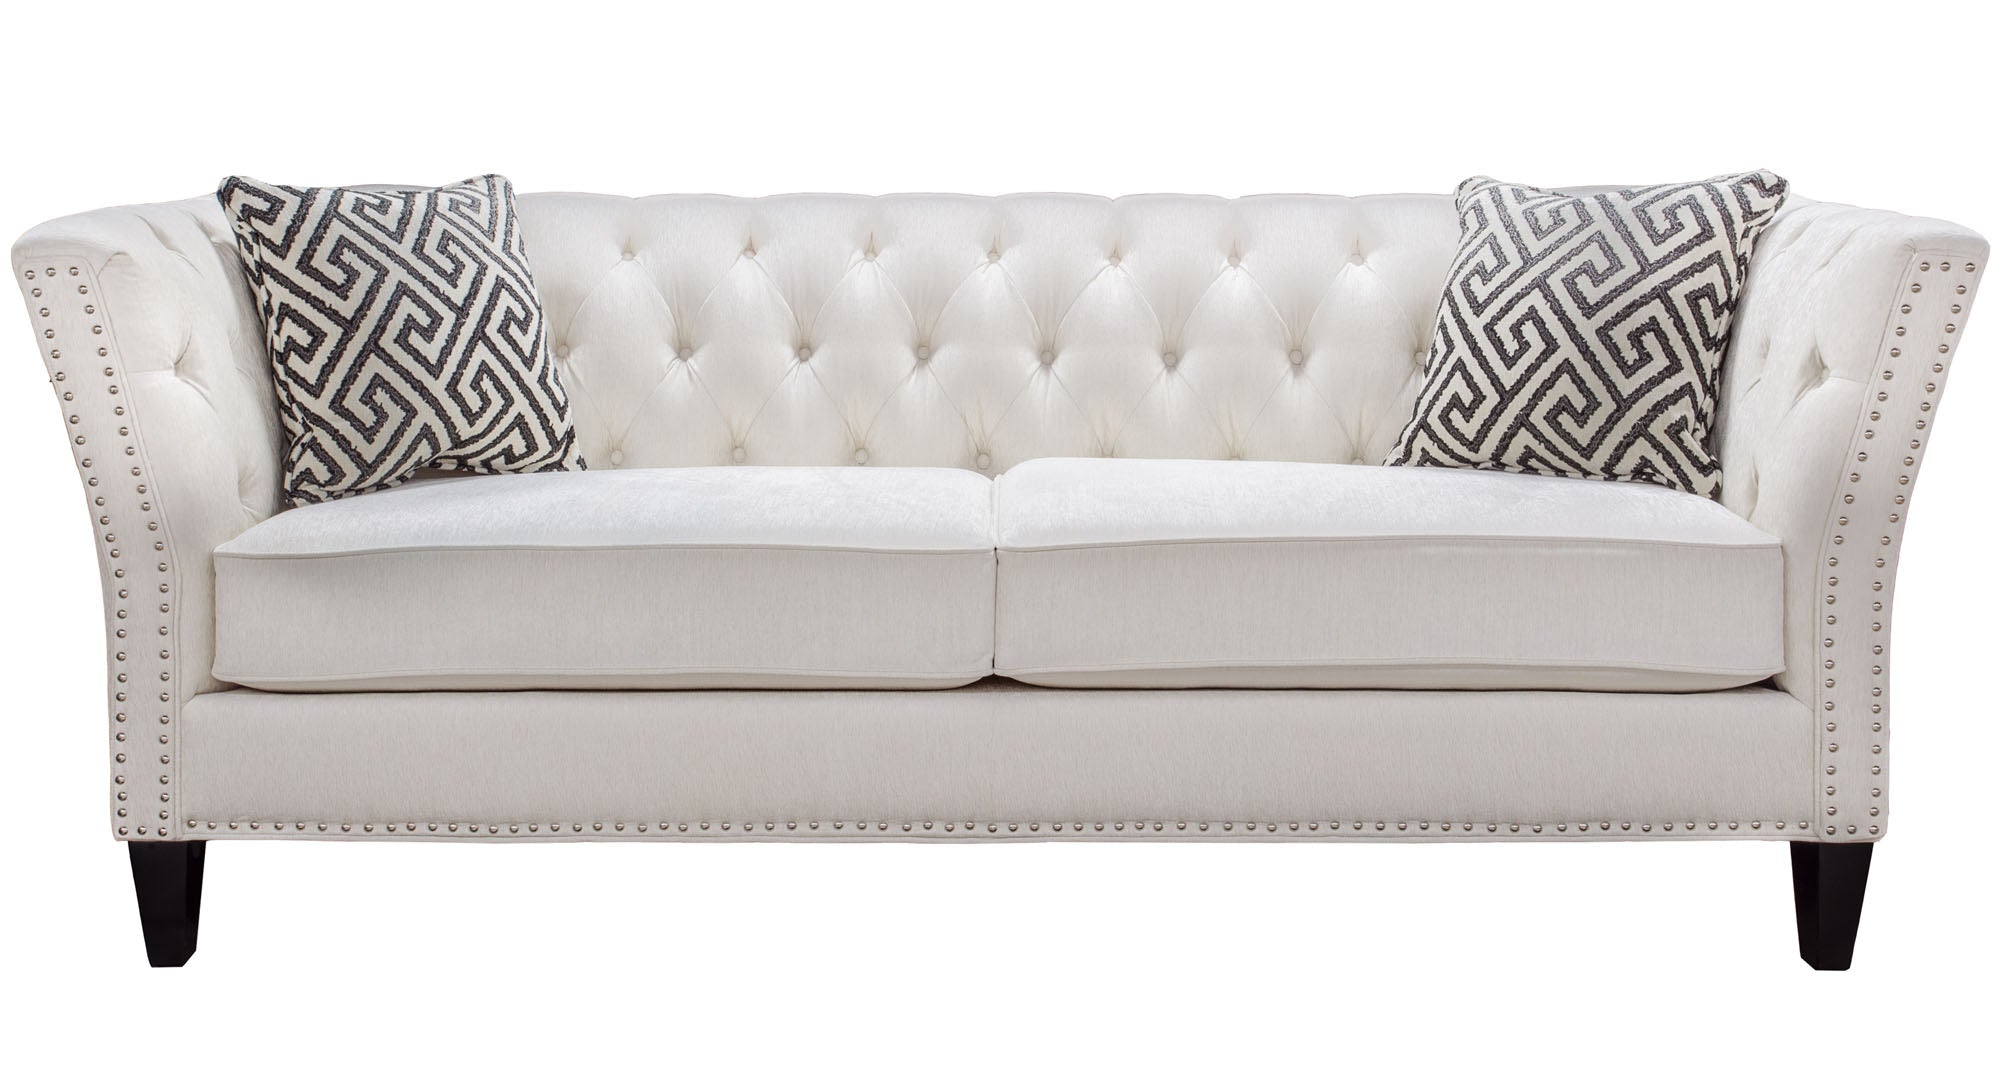 Malino Tufted Sofa - MJM Furniture